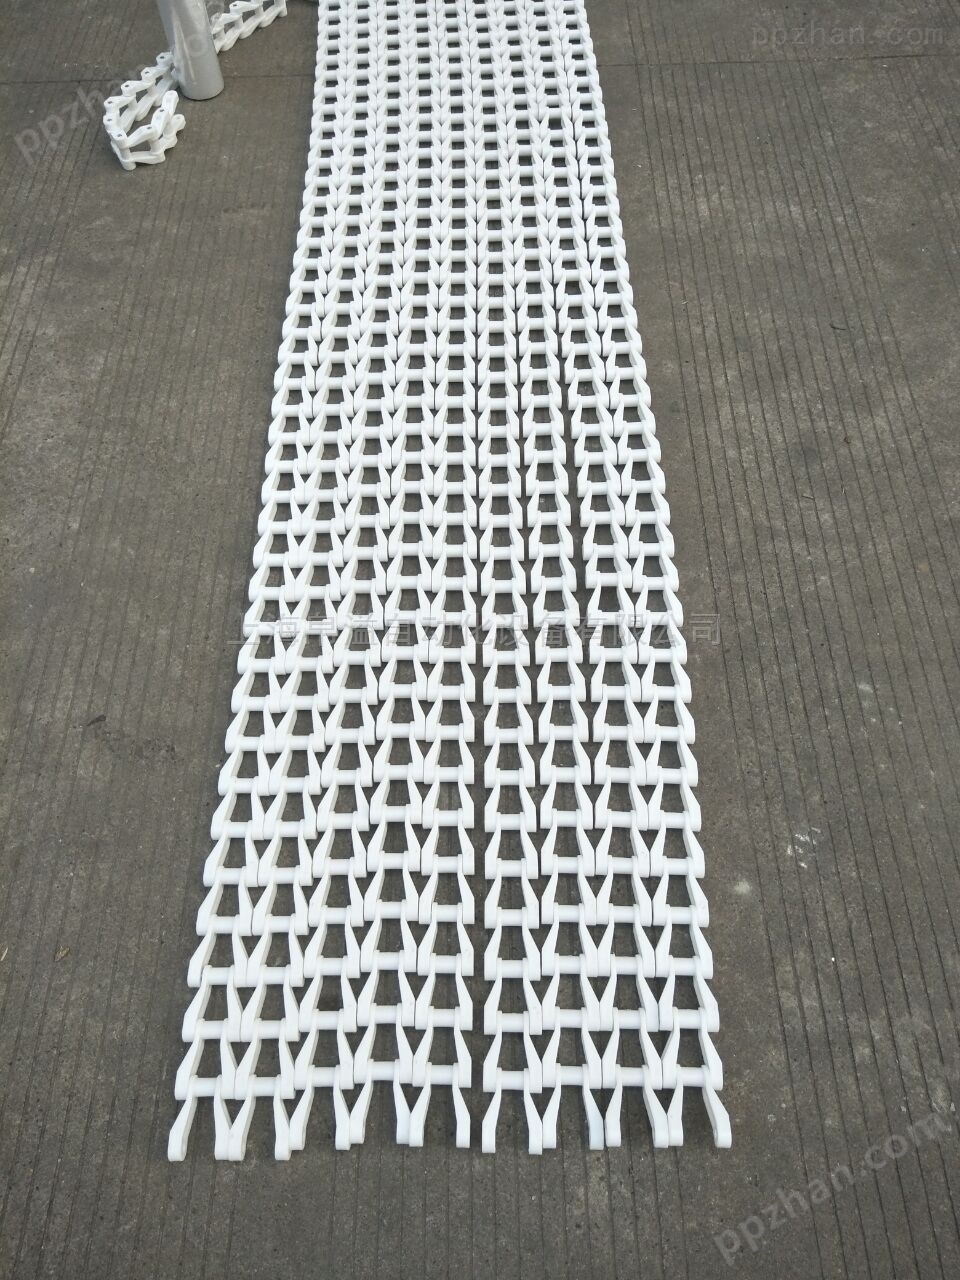 上海帛溢齿形链板输送机安装图纸